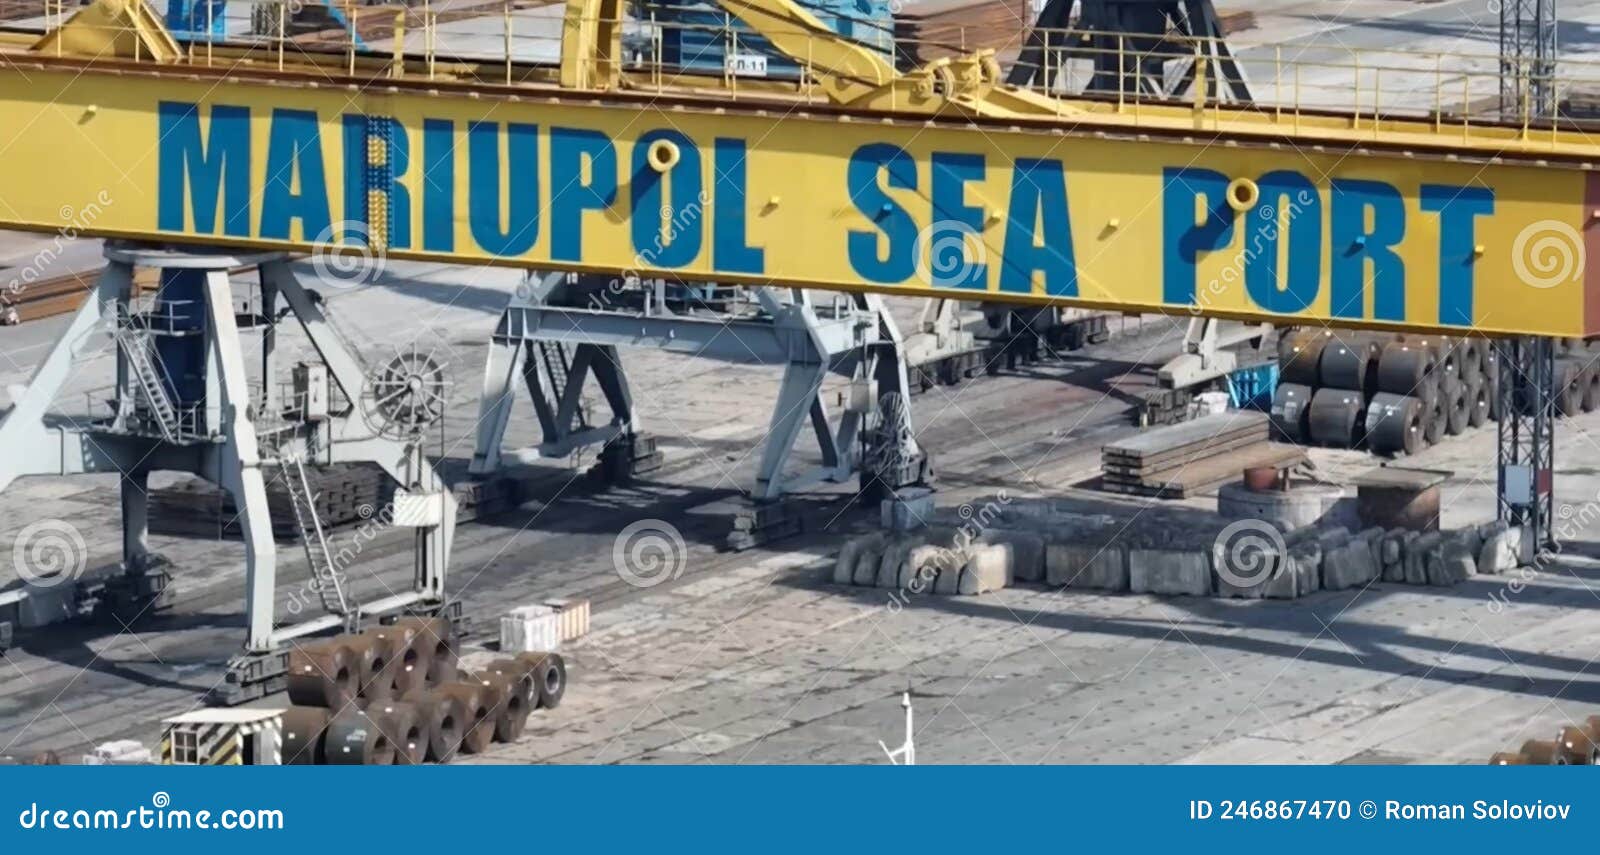 mariupol sea port, ukraine